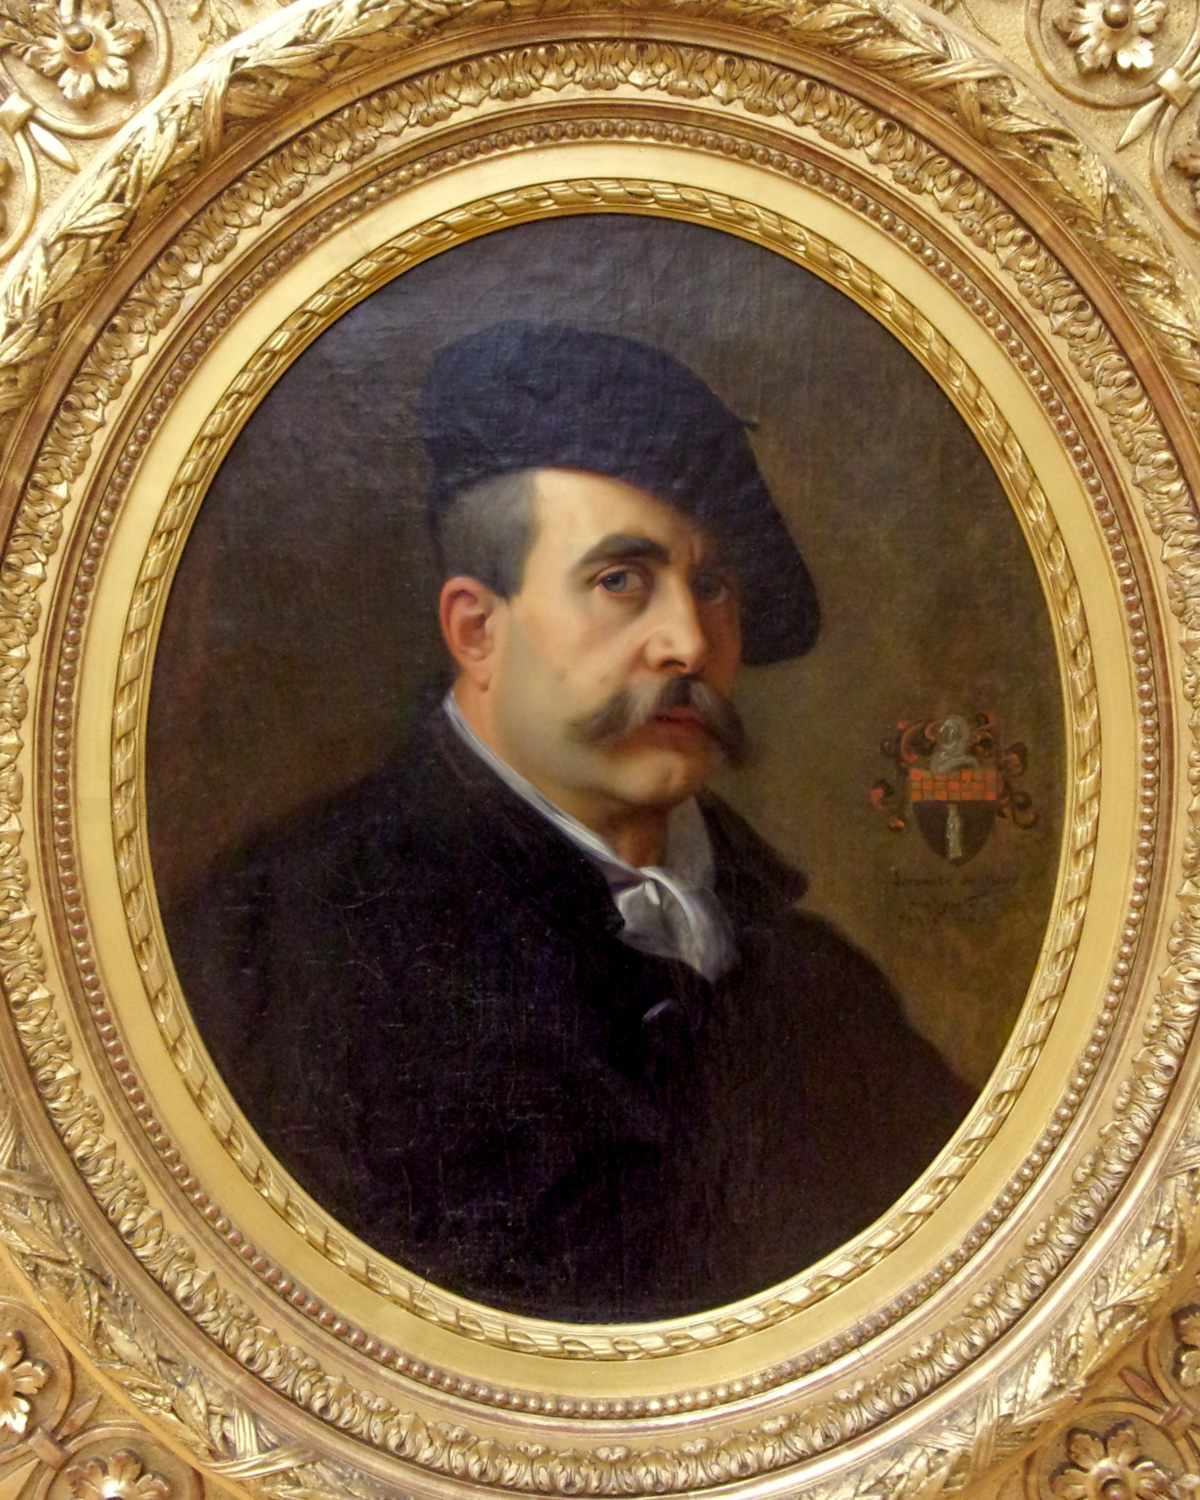 Autoportrait by Jean-Jules-Antoine Lecomte du Nouÿ